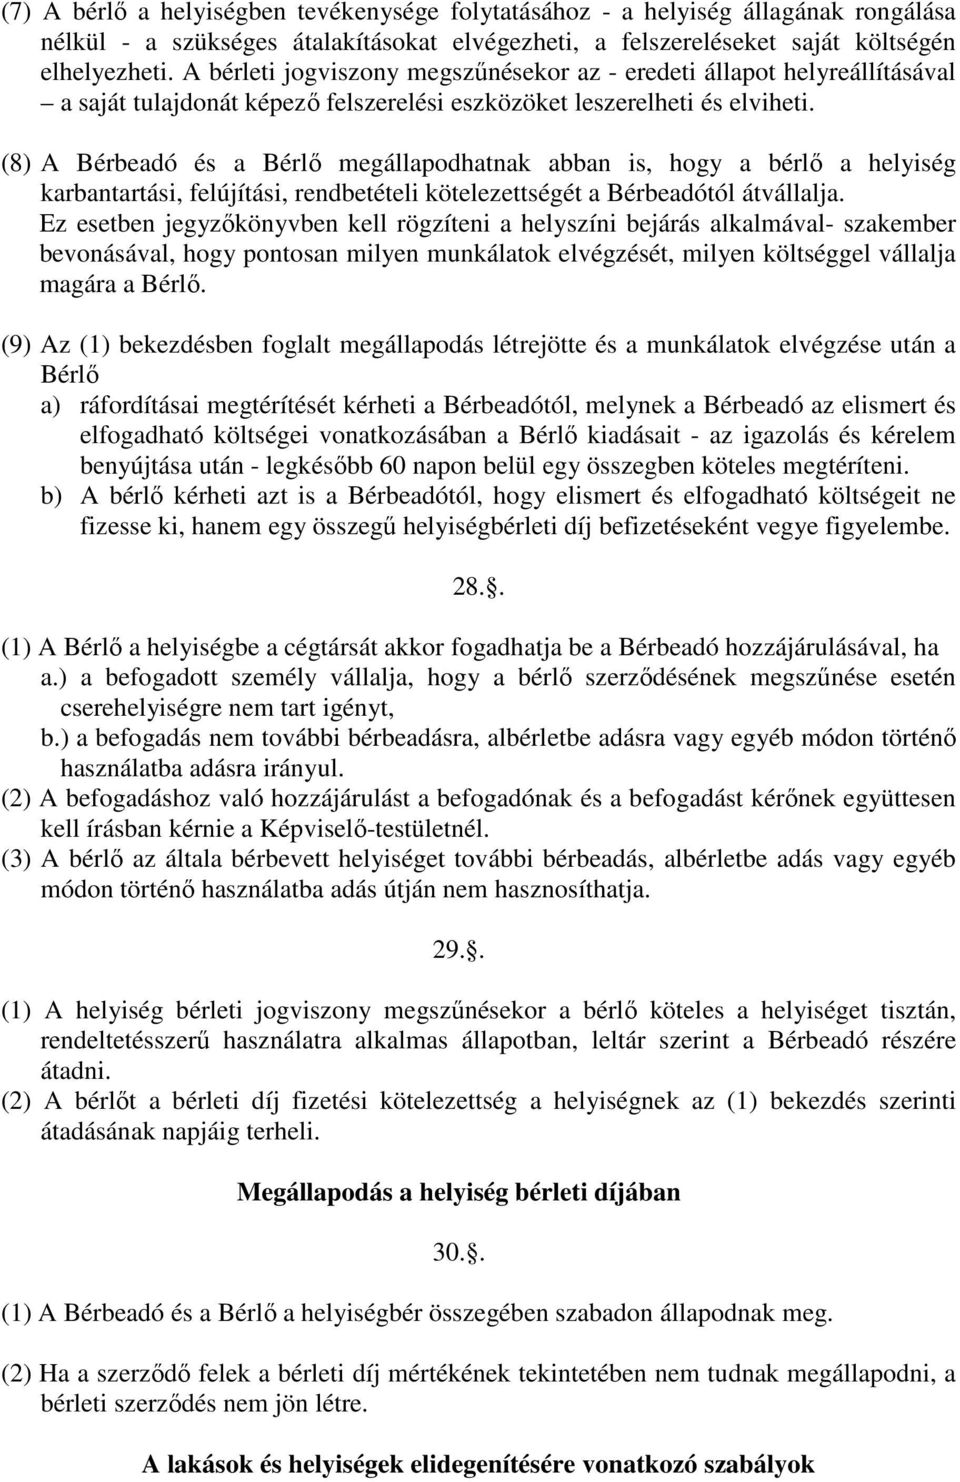 (8) A Bérbeadó és a Bérlı megállapodhatnak abban is, hogy a bérlı a helyiség karbantartási, felújítási, rendbetételi kötelezettségét a Bérbeadótól átvállalja.